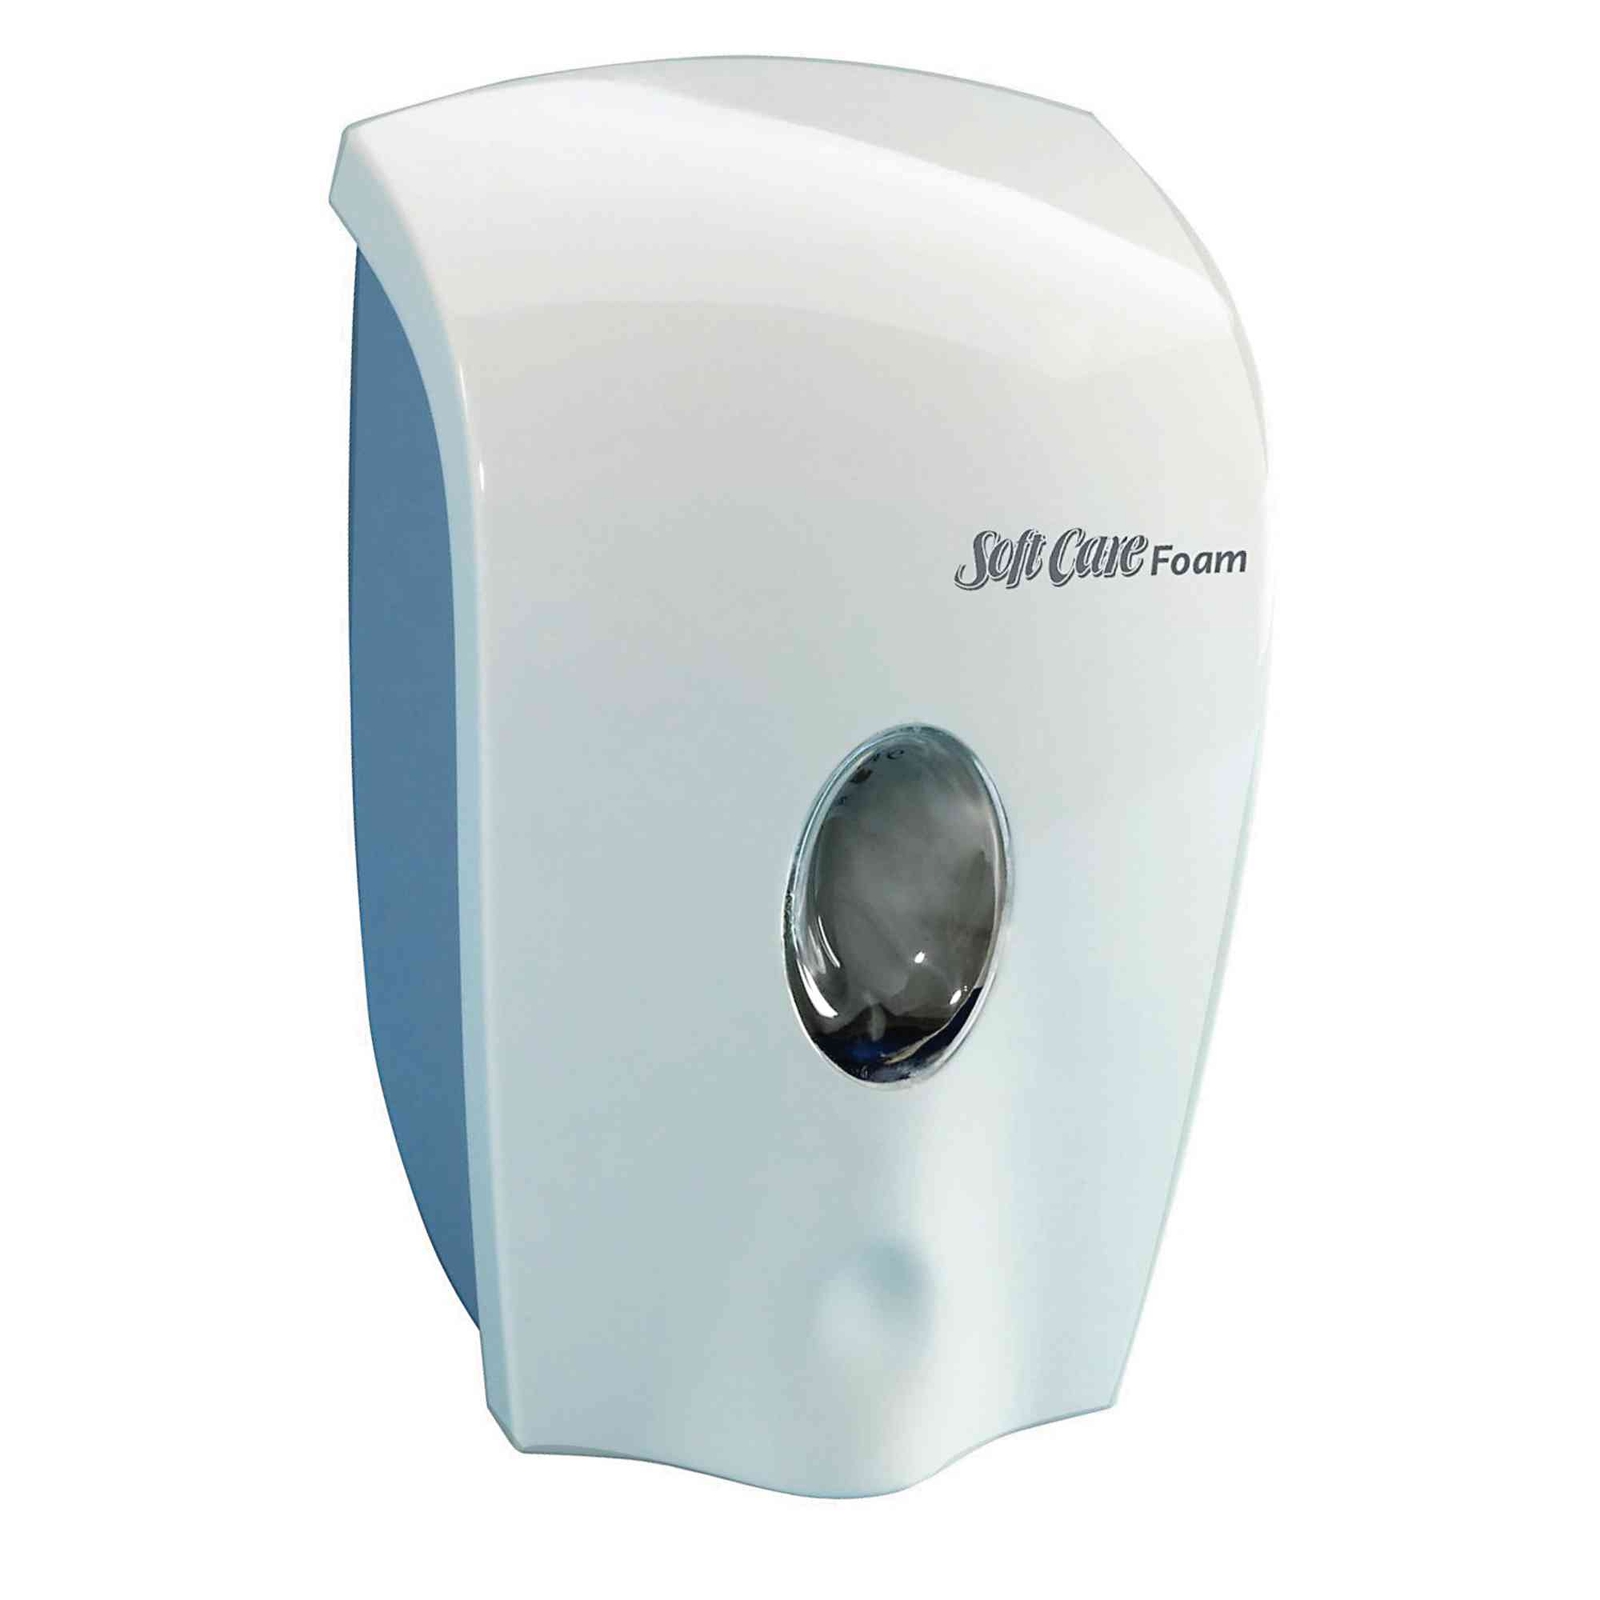 Soft Care Foam Dispenser